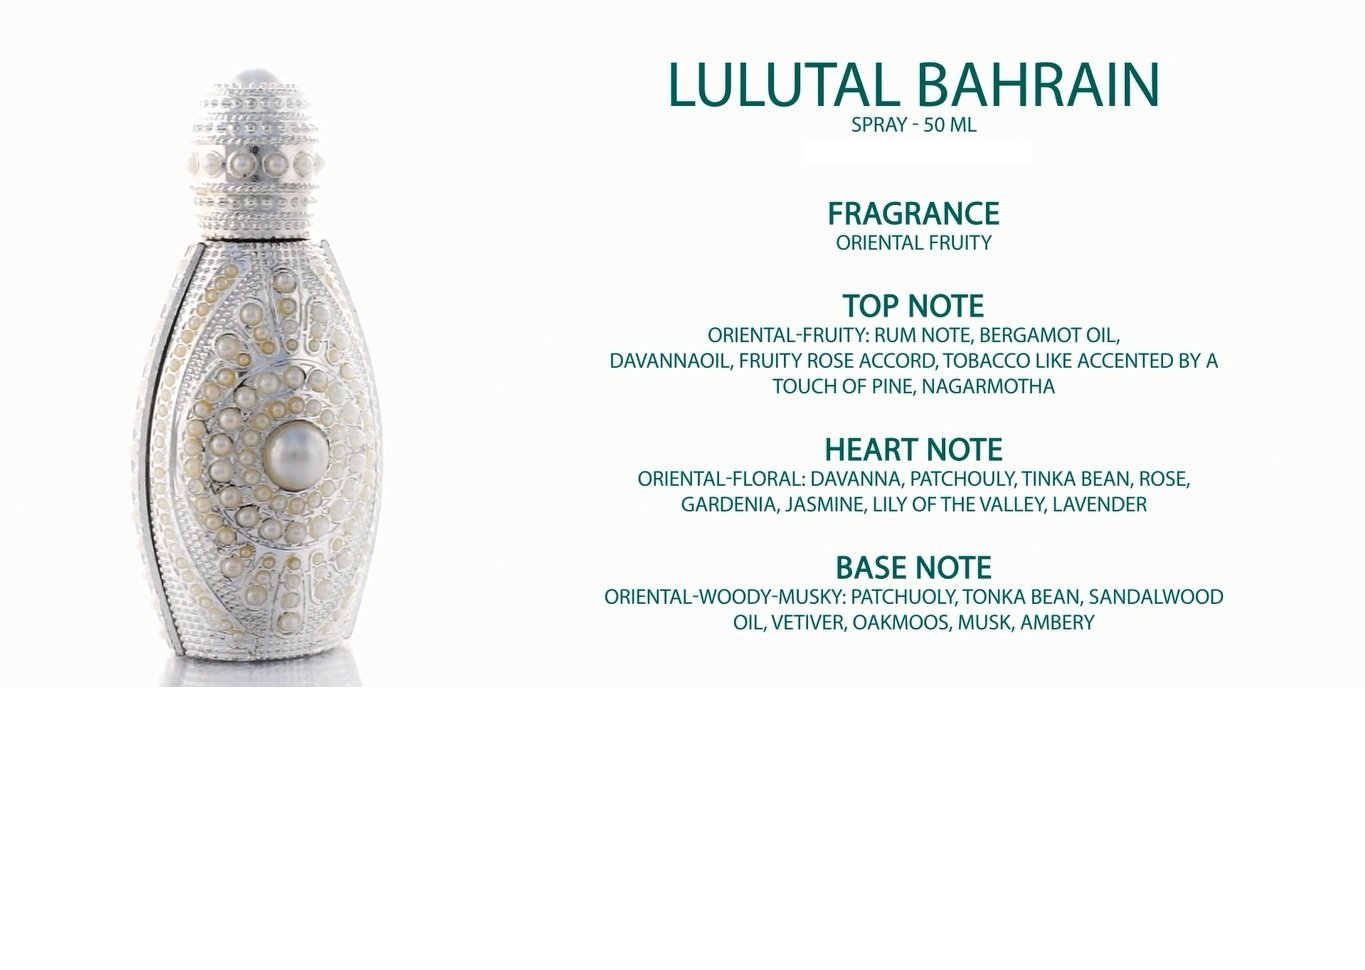 Lulatal Bahrain Spray Perfume 50ml by Asgharali